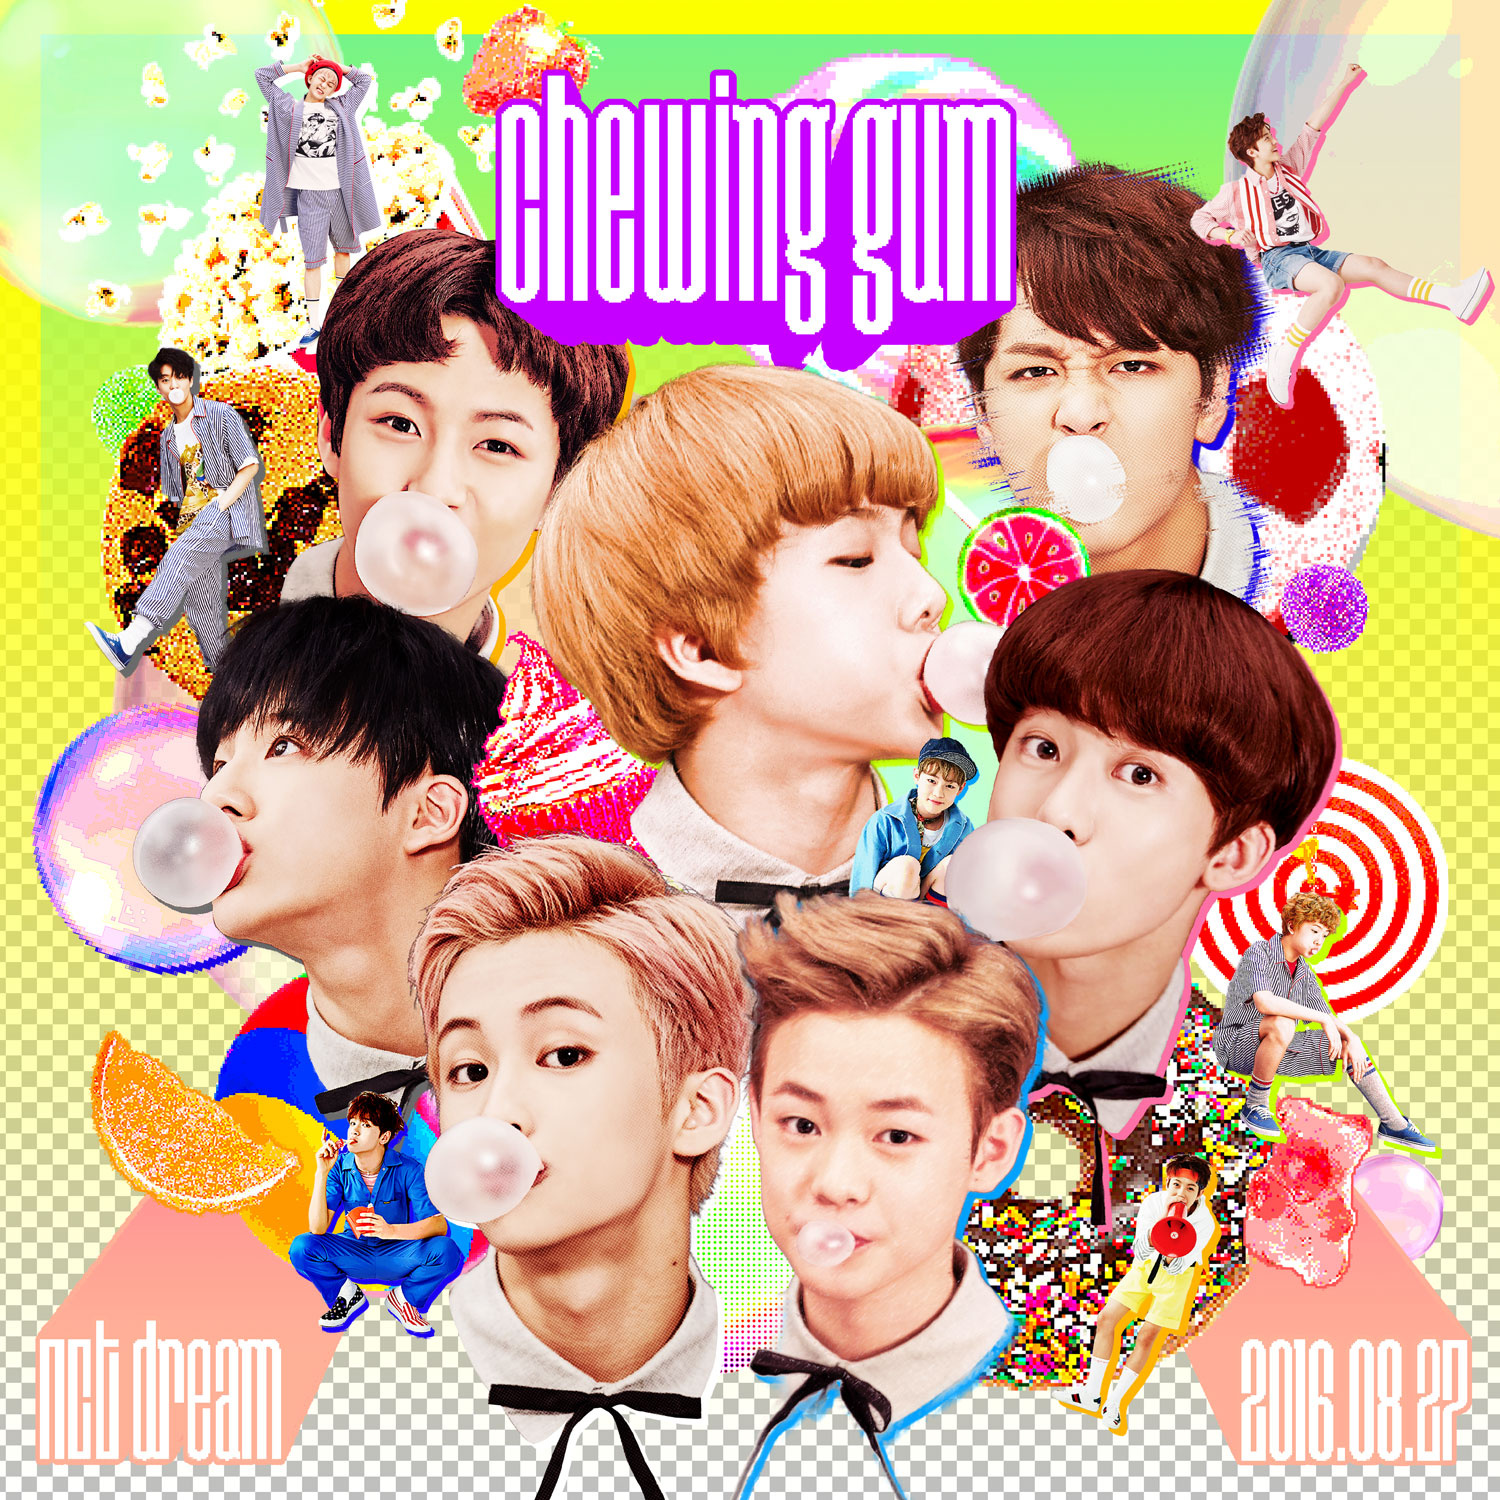 口香糖(韓國組合NCT DREAM歌曲《Chewing Gum》)